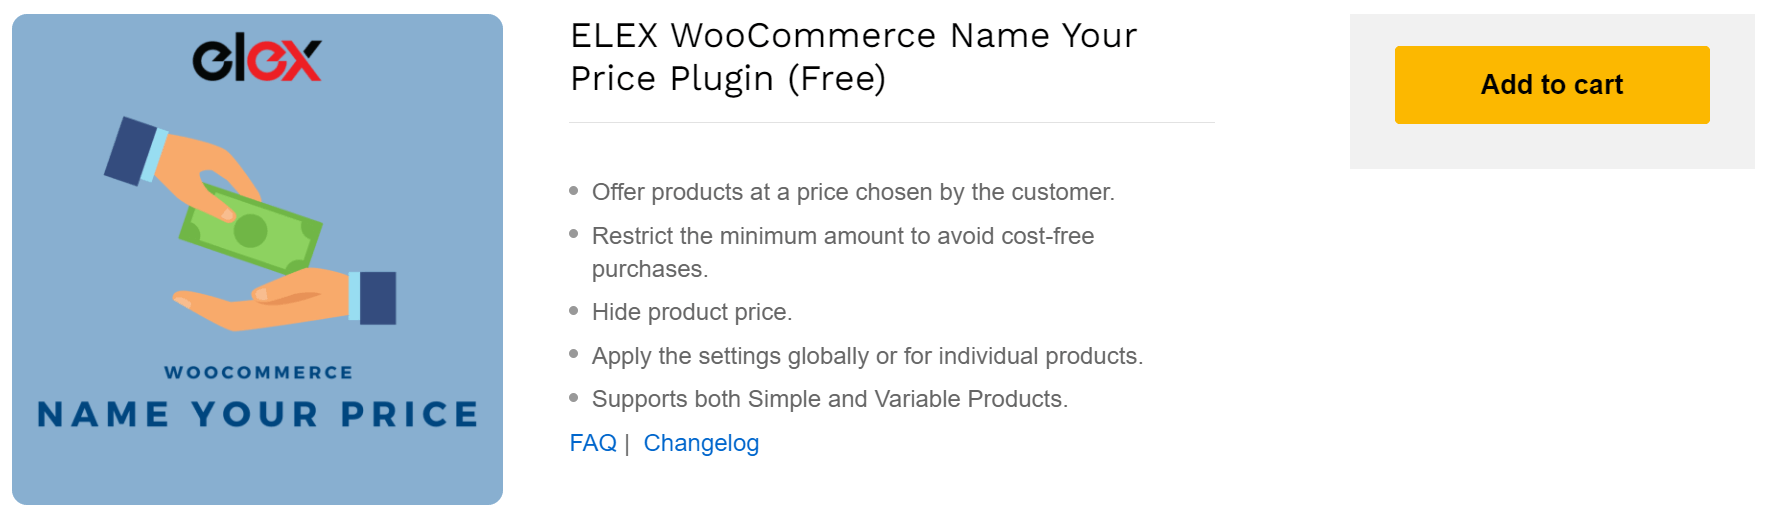 ELEX WooCommerce